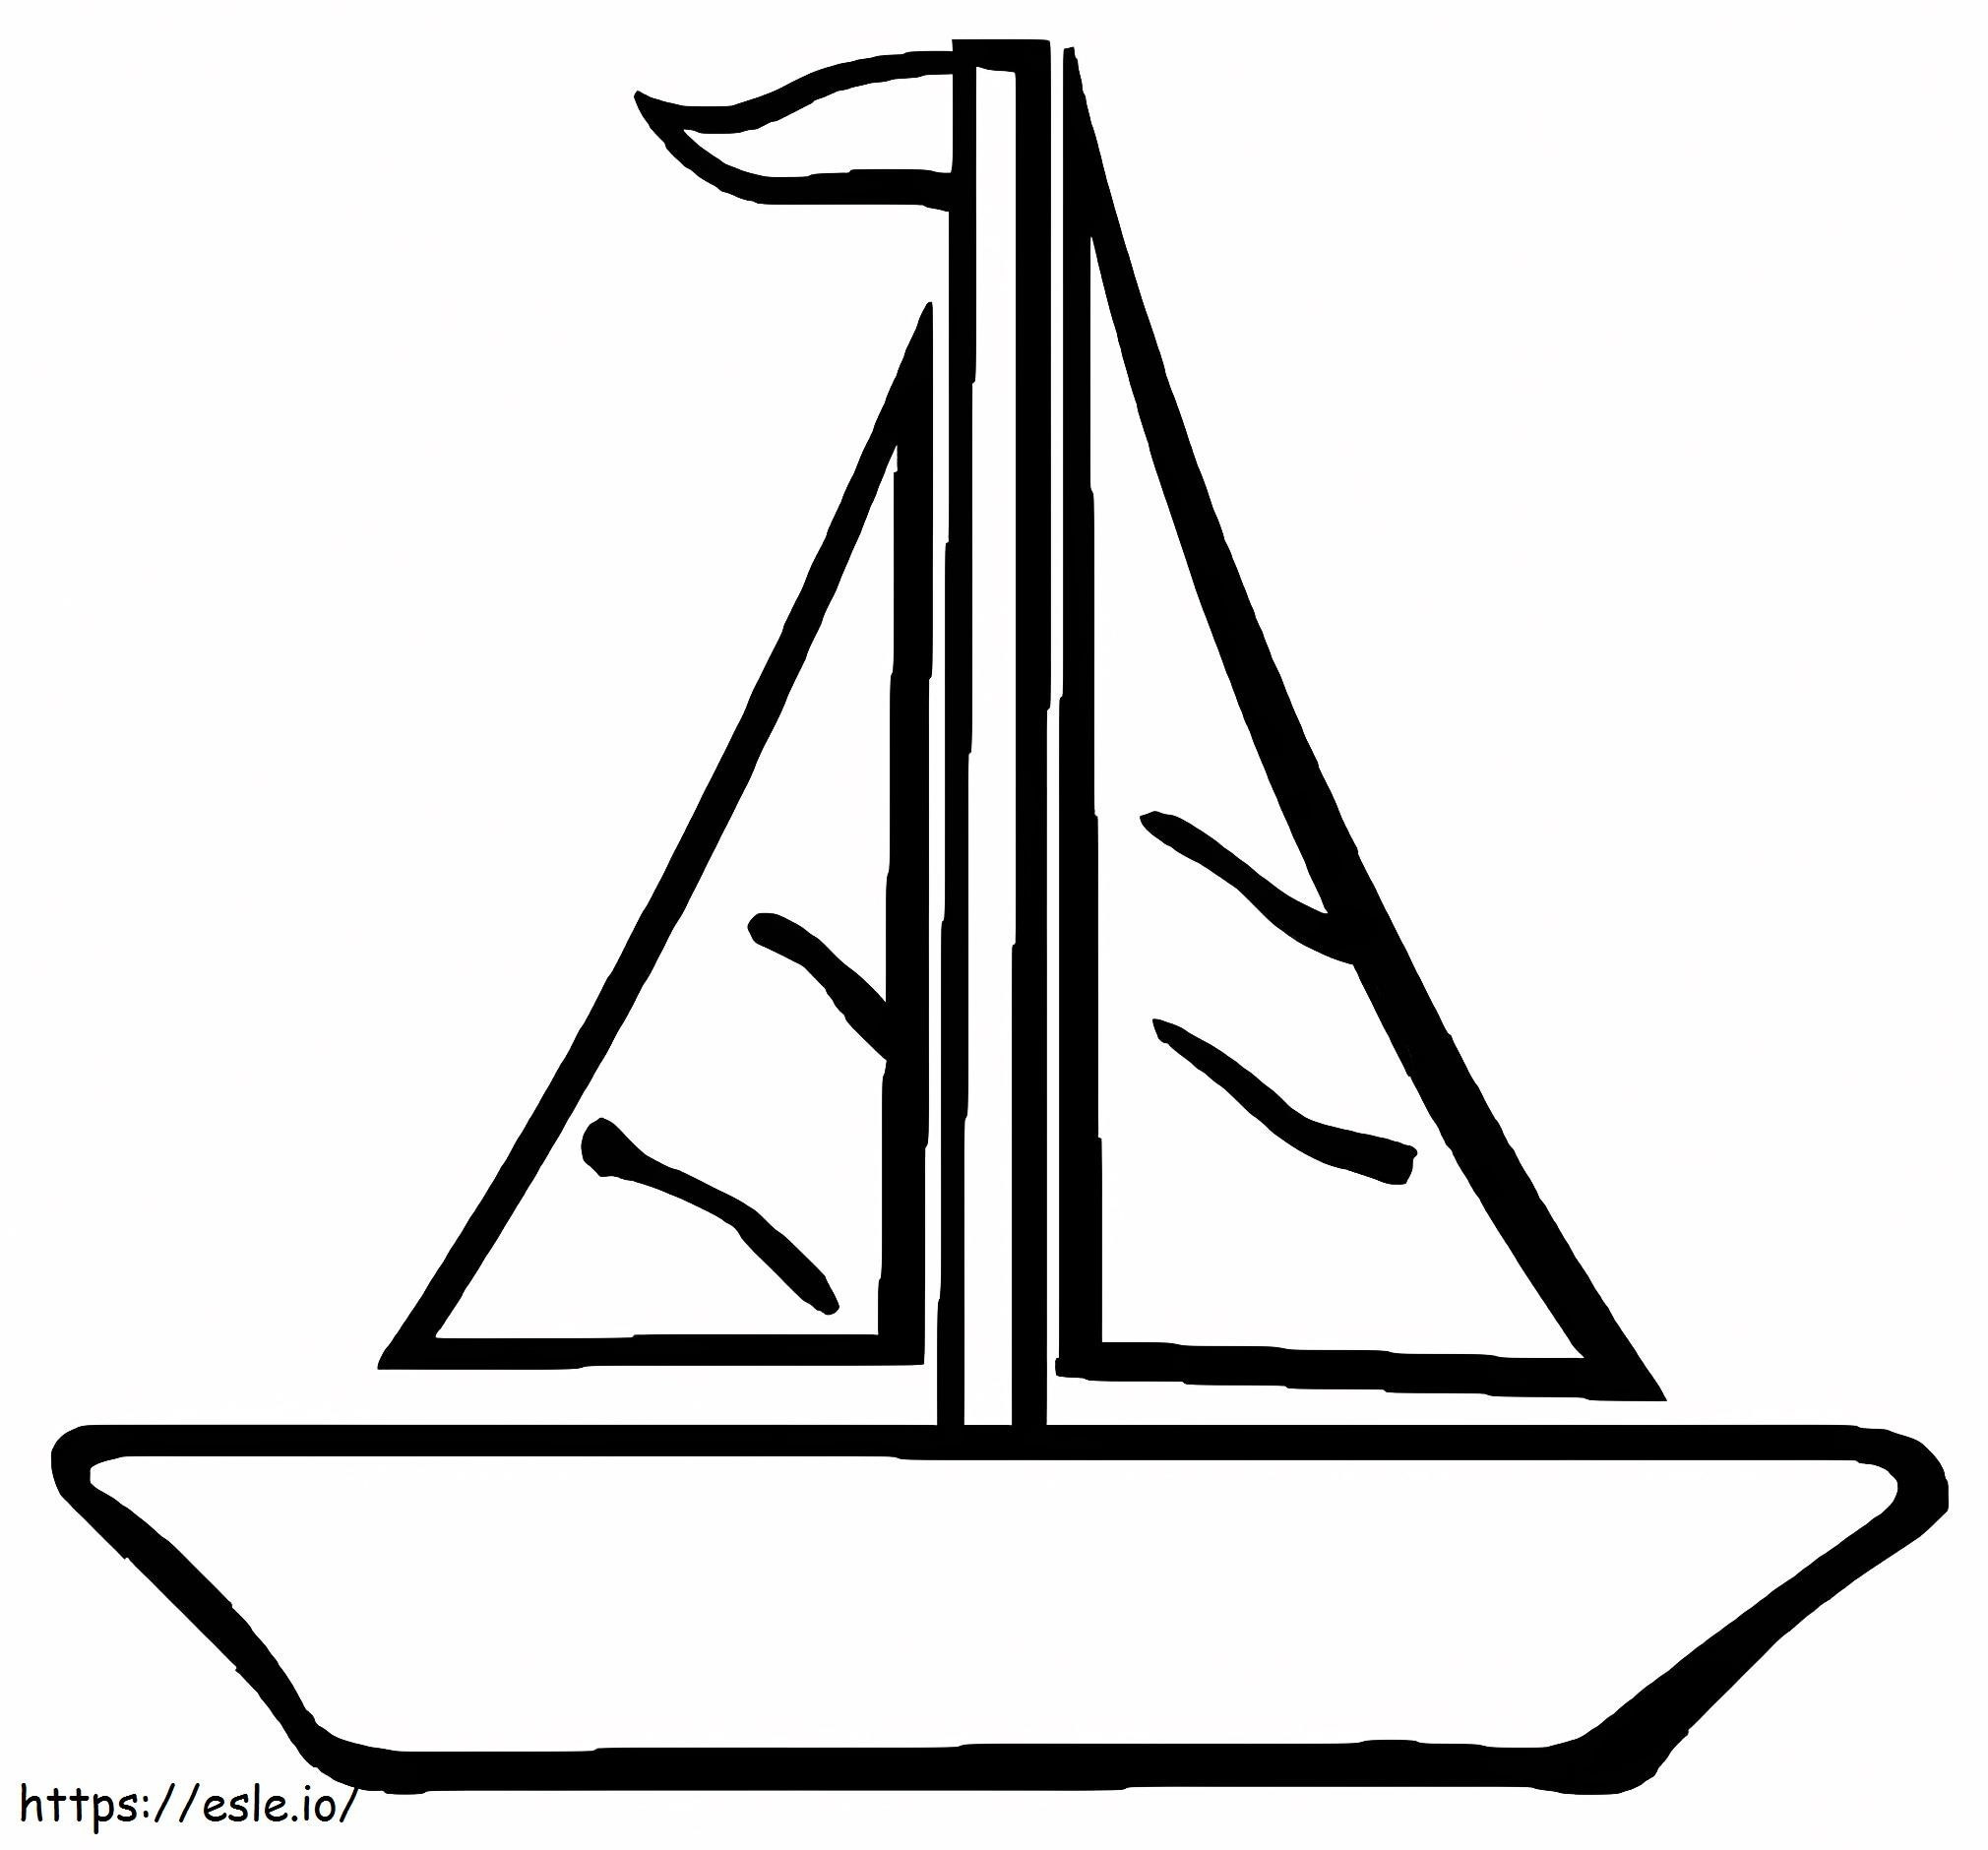 Einfaches Segelboot 1 ausmalbilder